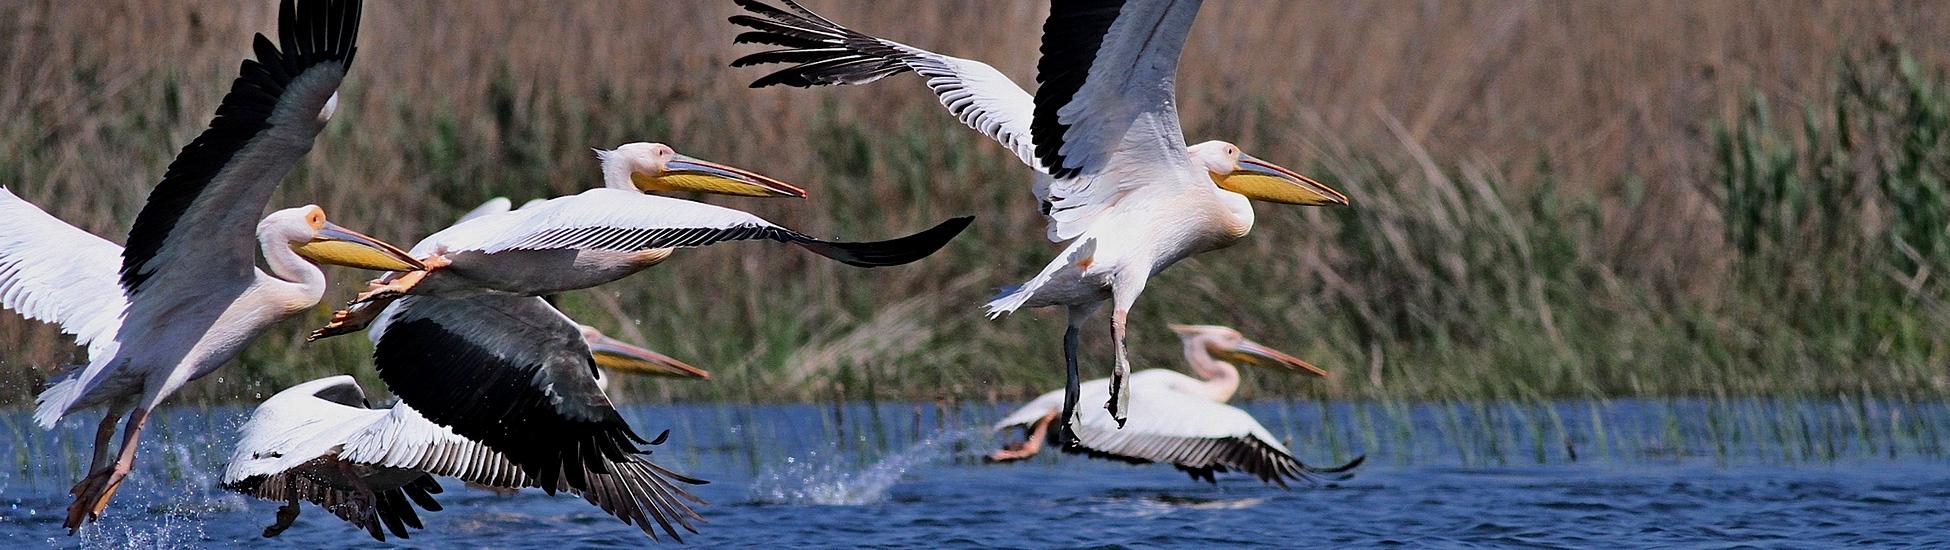 Wiosna z pelikanami